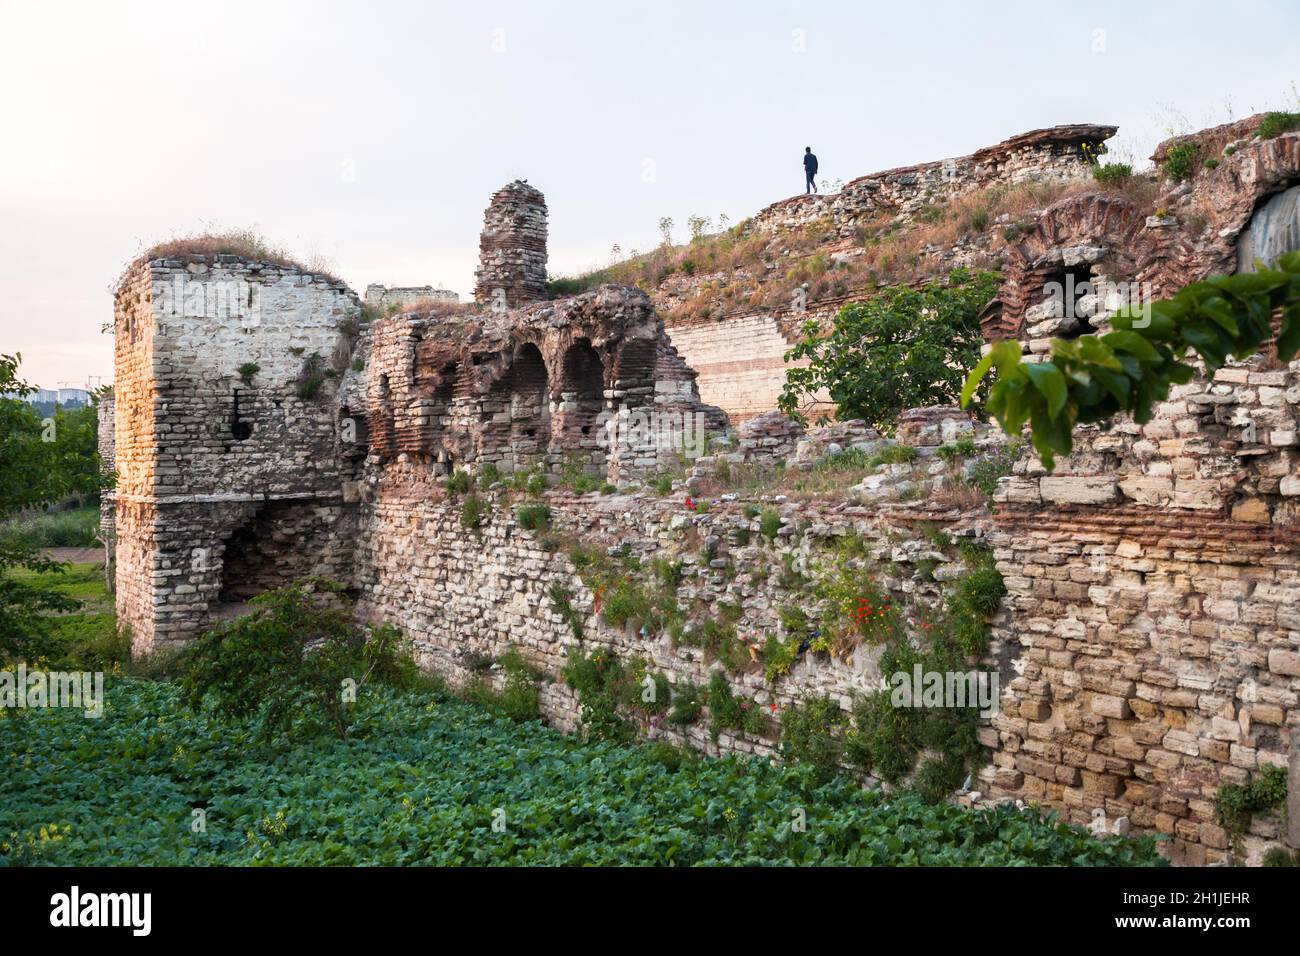 Estambul, Turquía - 015-11-2017 : Vista de las murallas históricas de Estambul Foto de stock